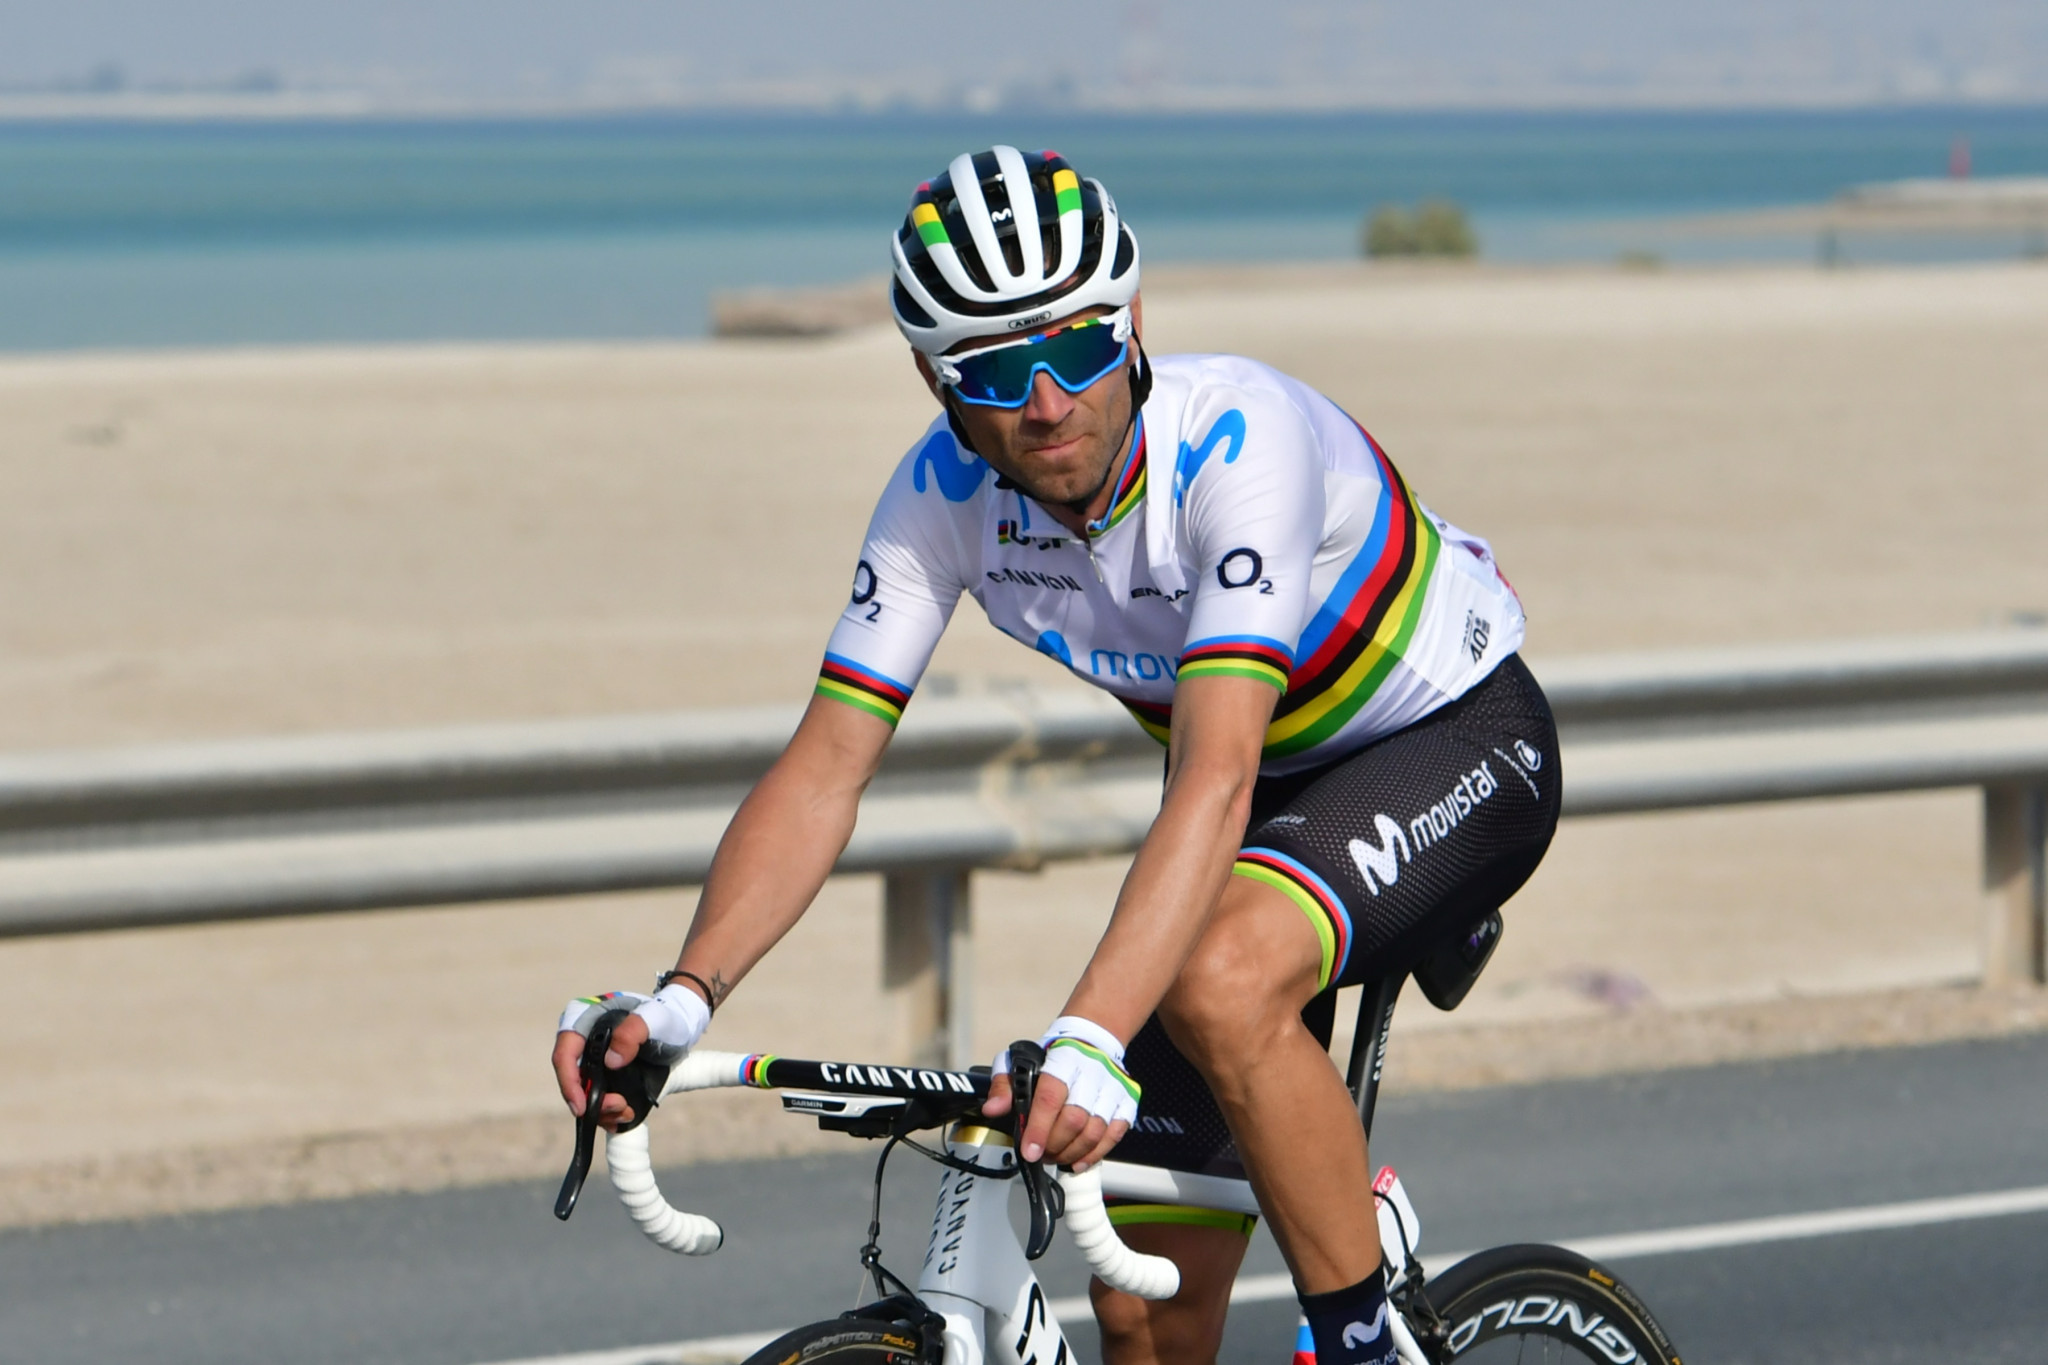 World champion Valverde wins third stage at UAE Tour